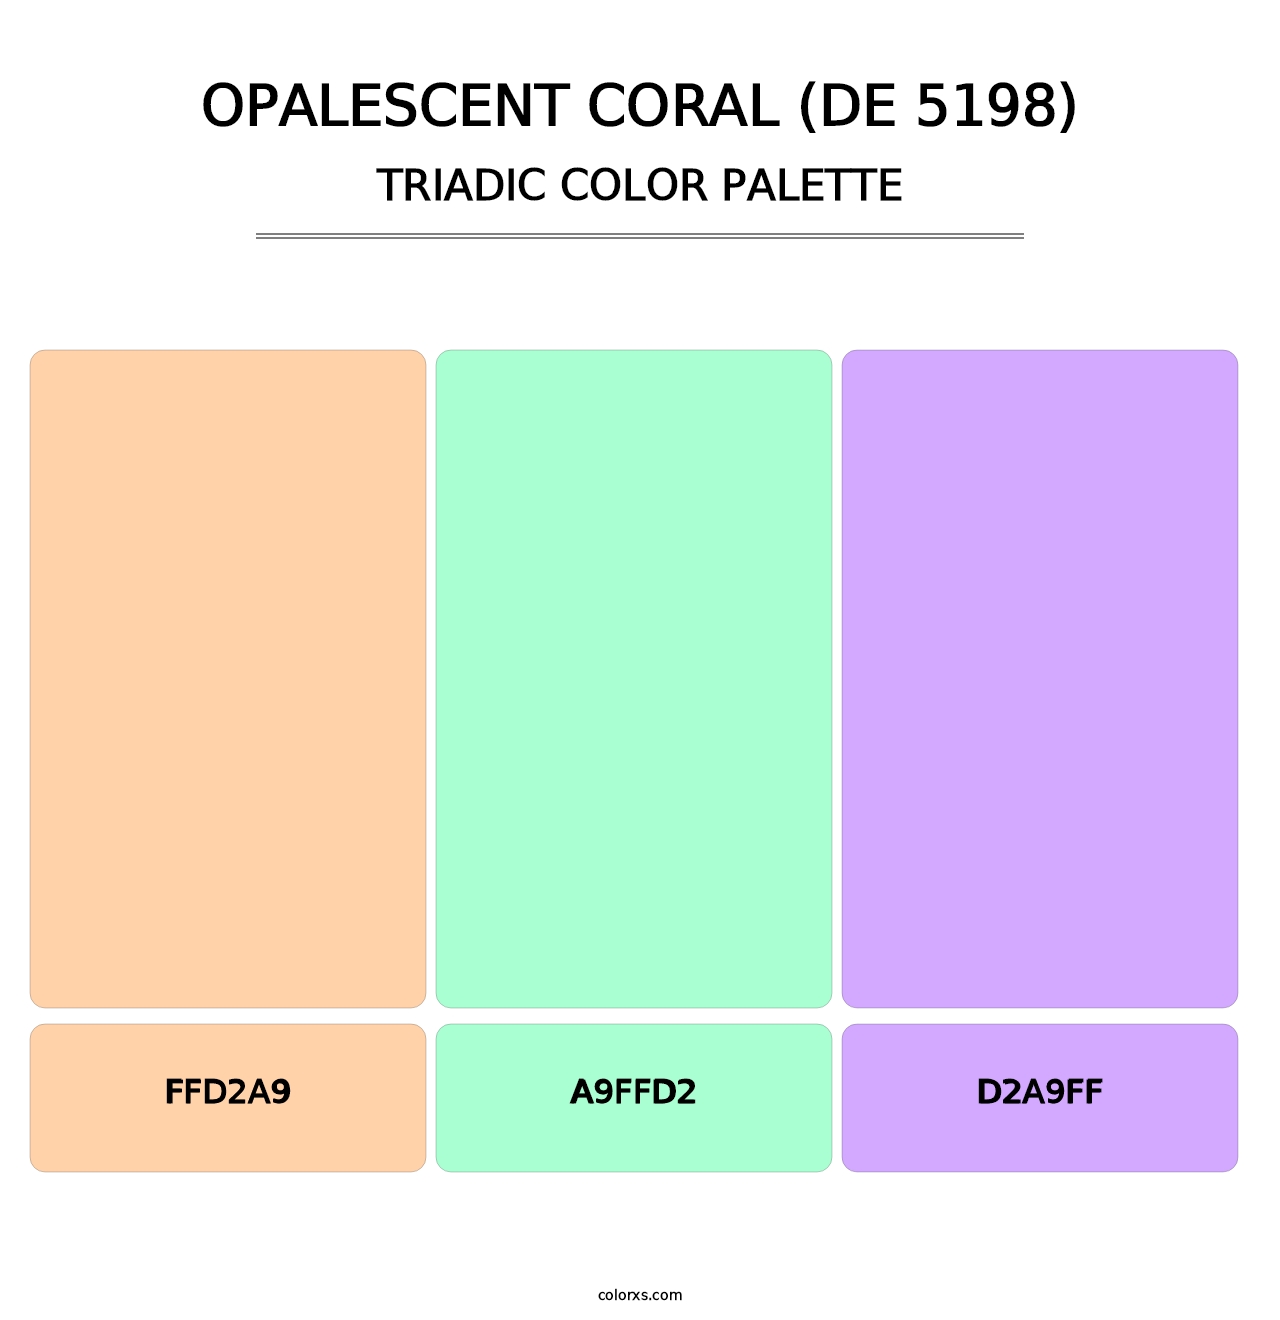 Opalescent Coral (DE 5198) - Triadic Color Palette